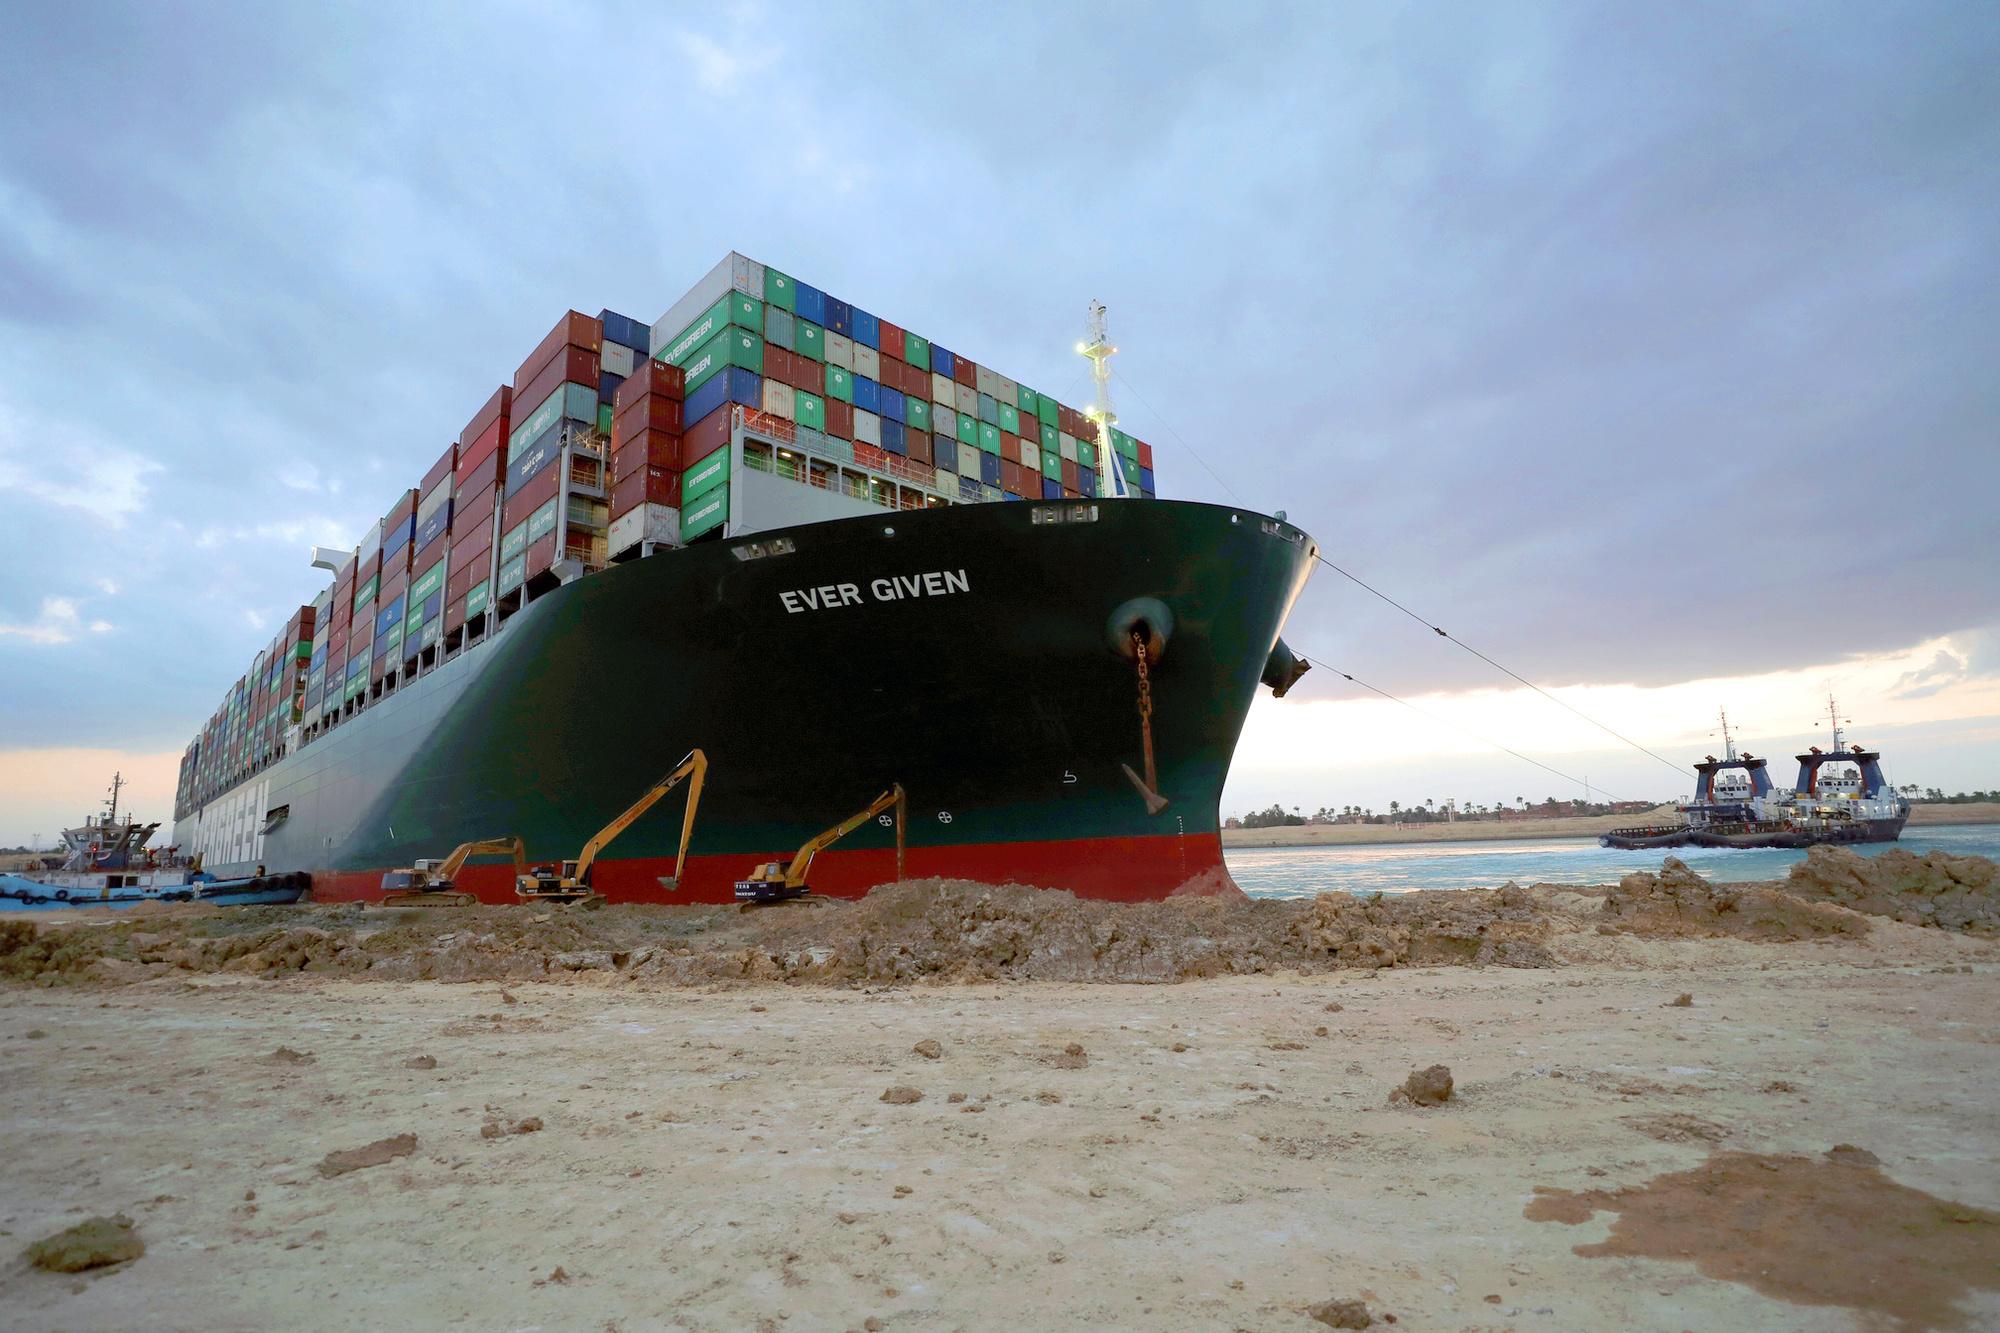 Canal de Suez paralysé: le porte-conteneurs géant remis à flot, le trafic peut reprendre (vidéos)